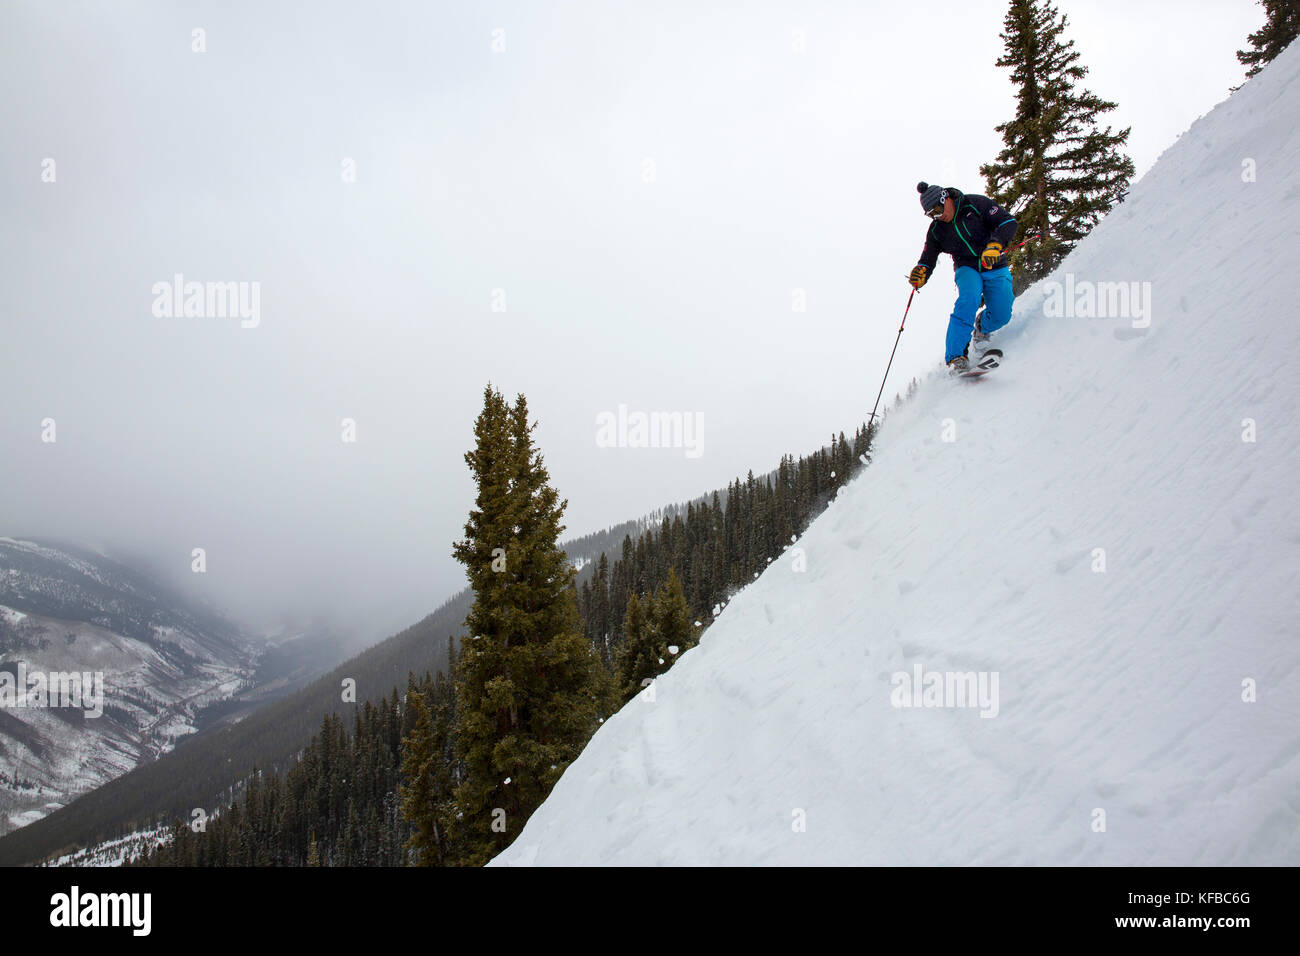 USA, Colorado, Aspen, telemark skier makes turns on Kessler's run, Aspen Highlands Ski Resort Stock Photo